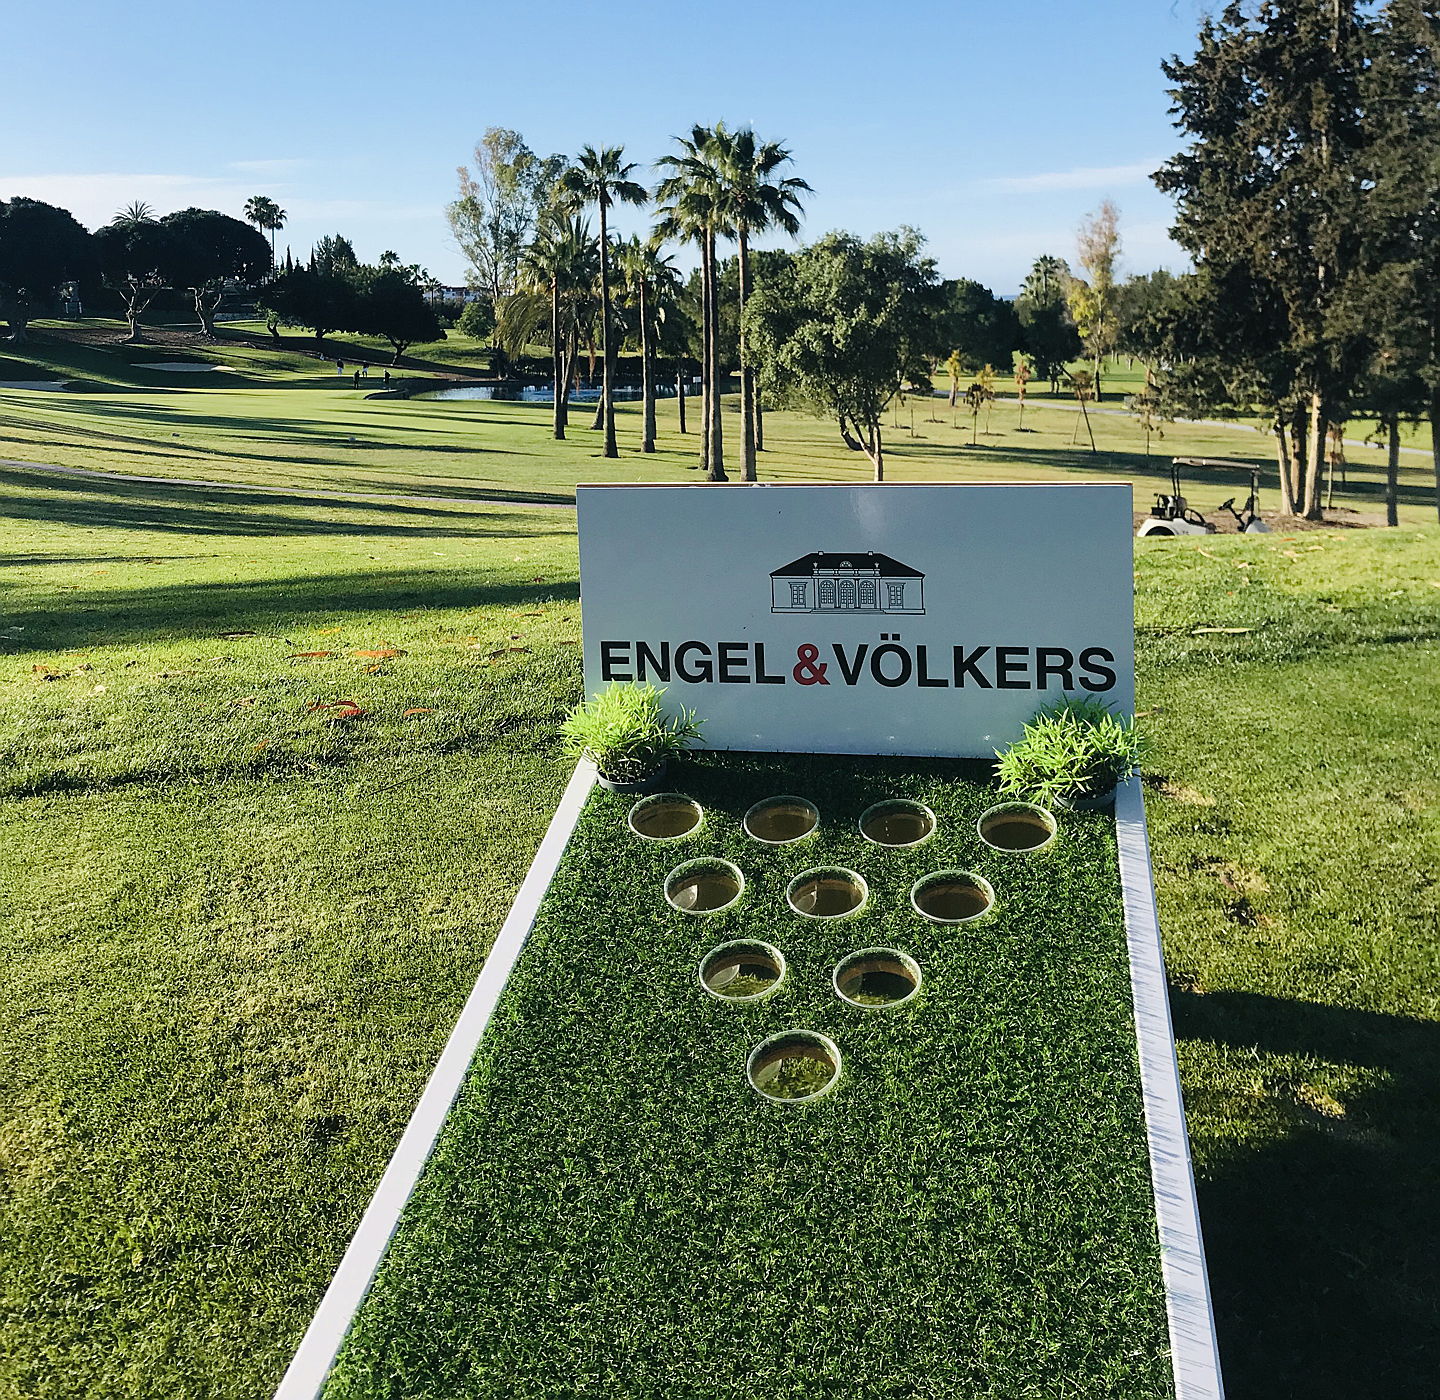  Marbella
- Engel & Völkers Activity